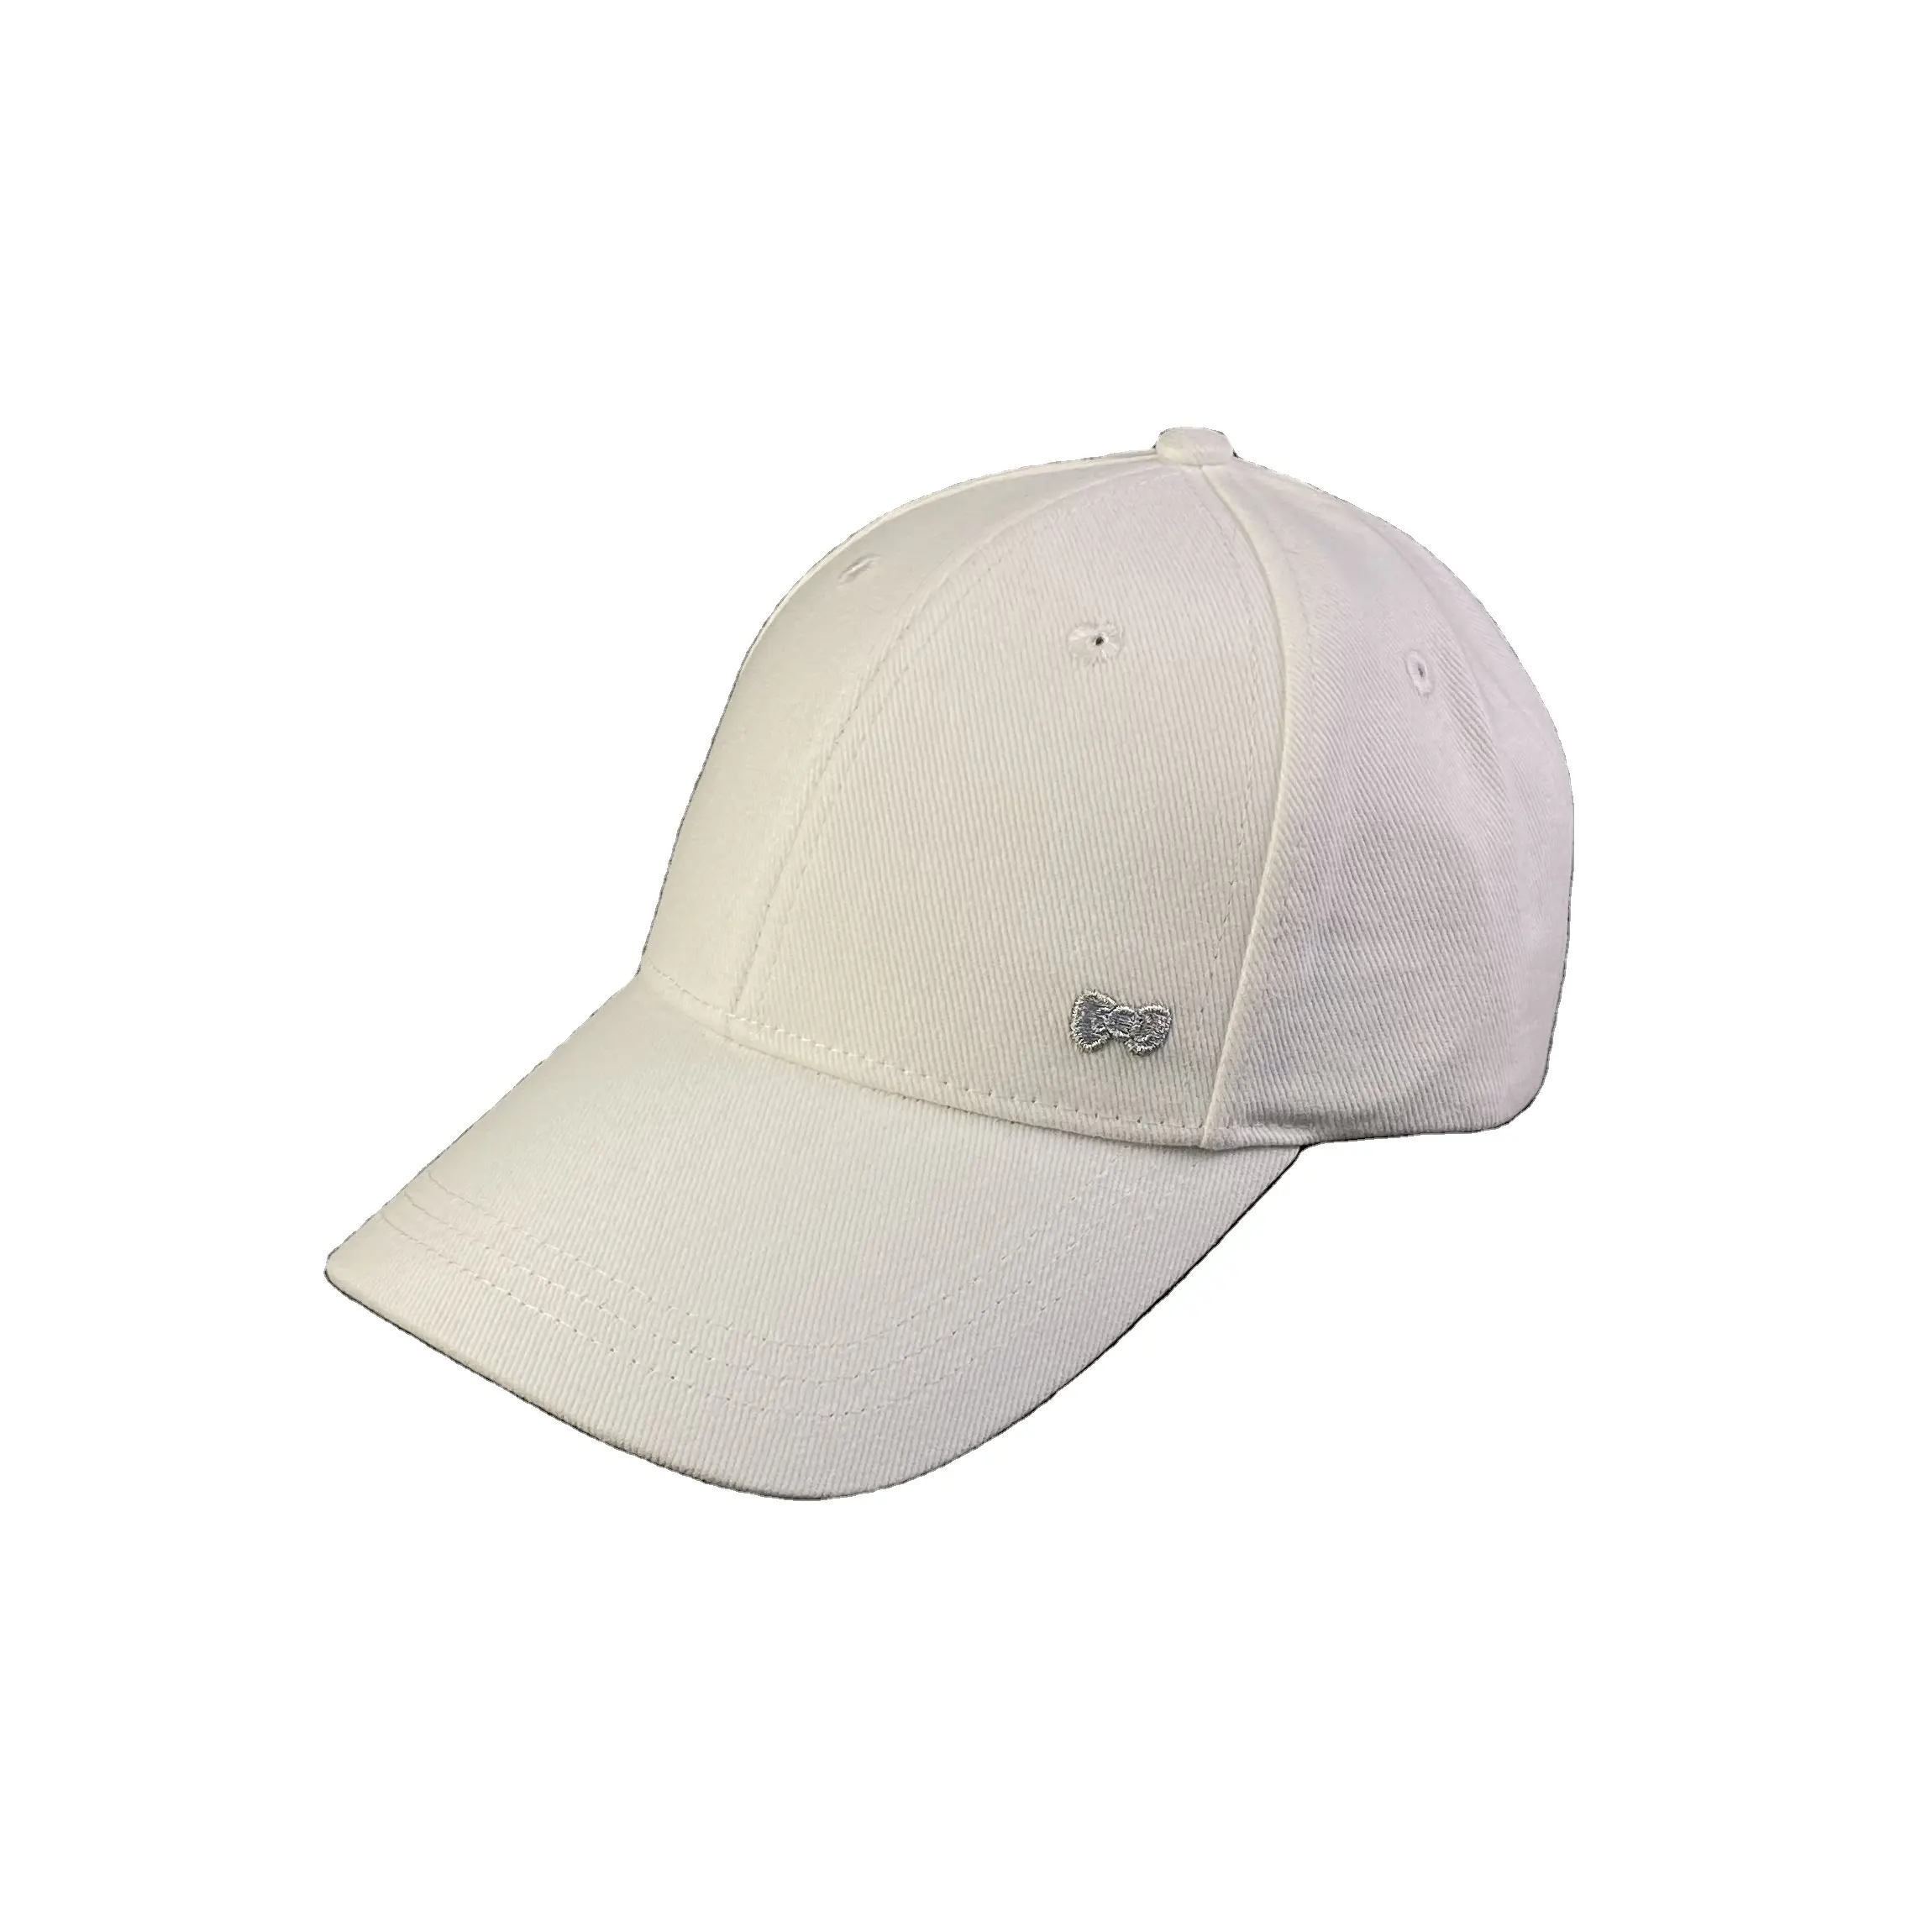 Grosir 100% Kain Katun Organik Cocok untuk Topi Luar Ruangan Kain Topi Bisbol Sertifikat Perlindungan Lingkungan